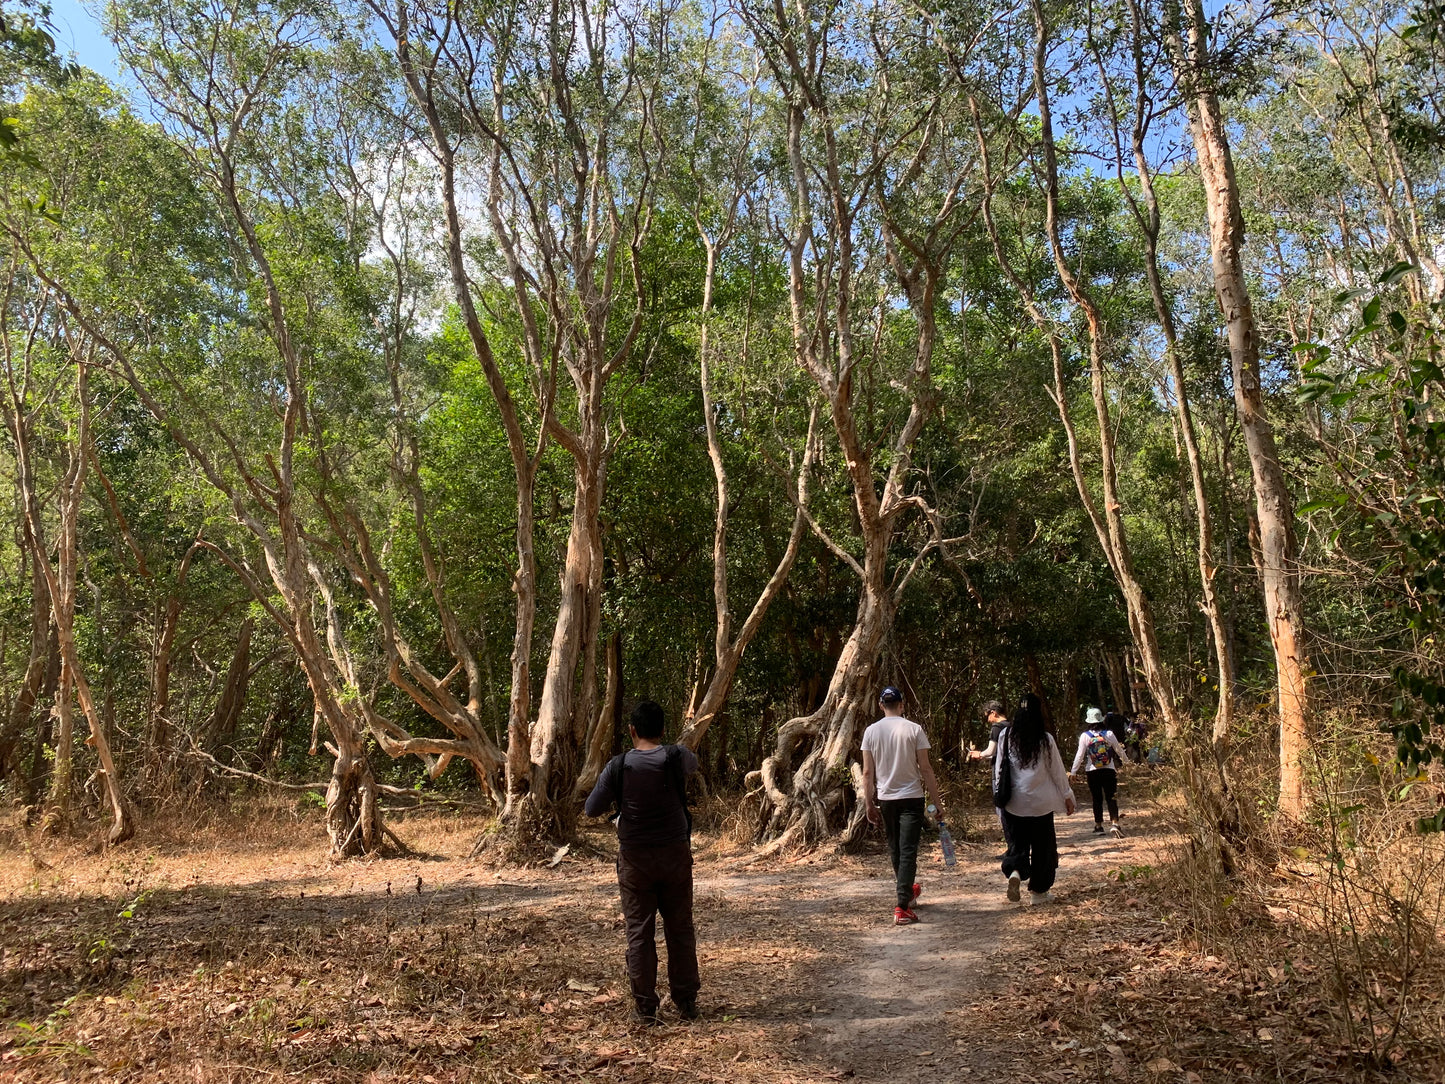 (Visite de base) 14AB : Jungle de Phuoc Buu (réserve naturelle) : les pionniers de la côte découvrent la beauté sauvage de Binh Chau